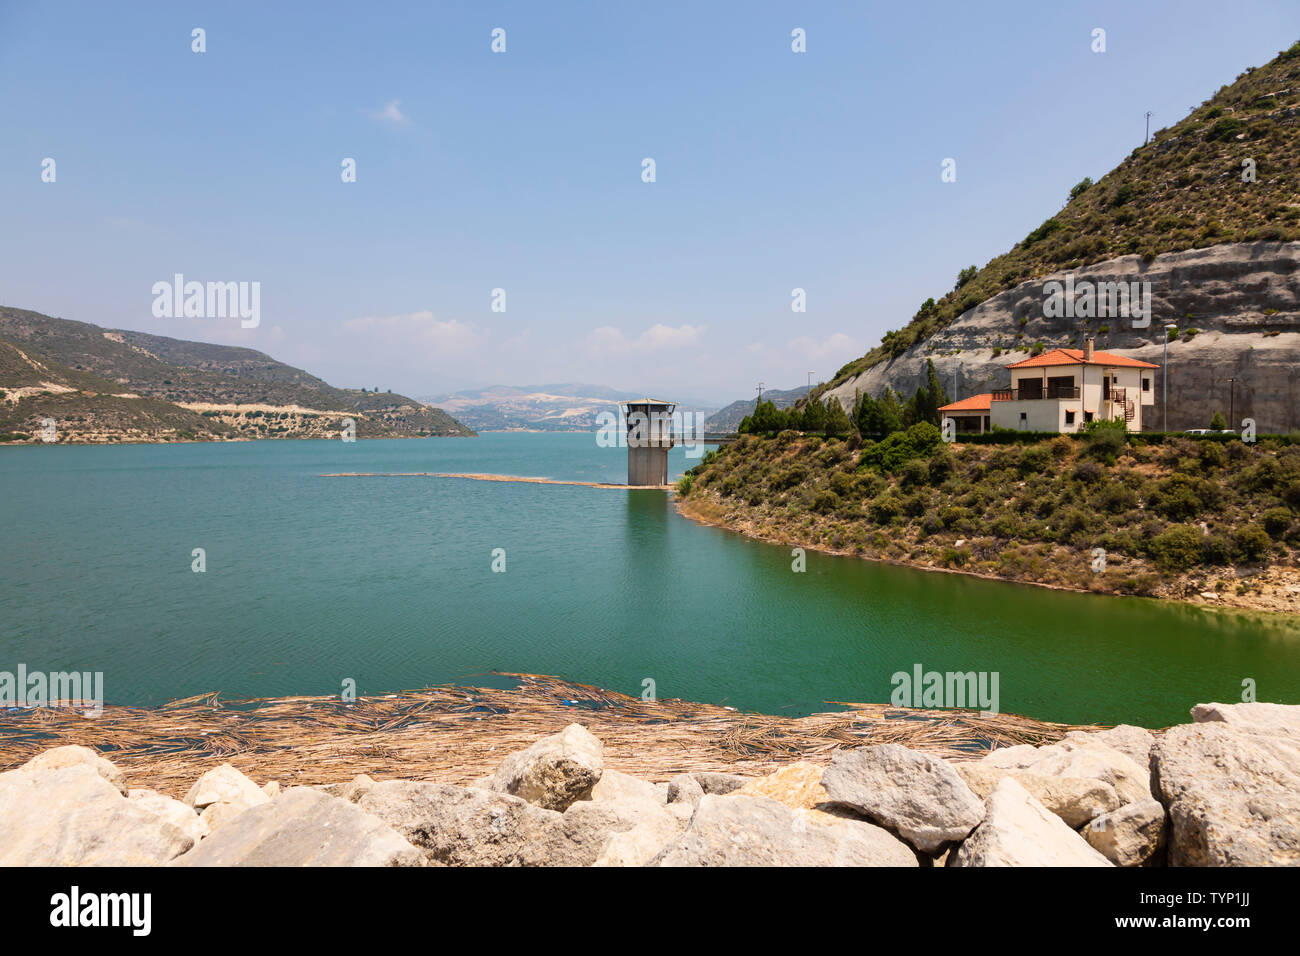 Kouris Dam und Wasserbehälter nach längerem Regen es füllt. Limassol, Zypern 2019 Stockfoto